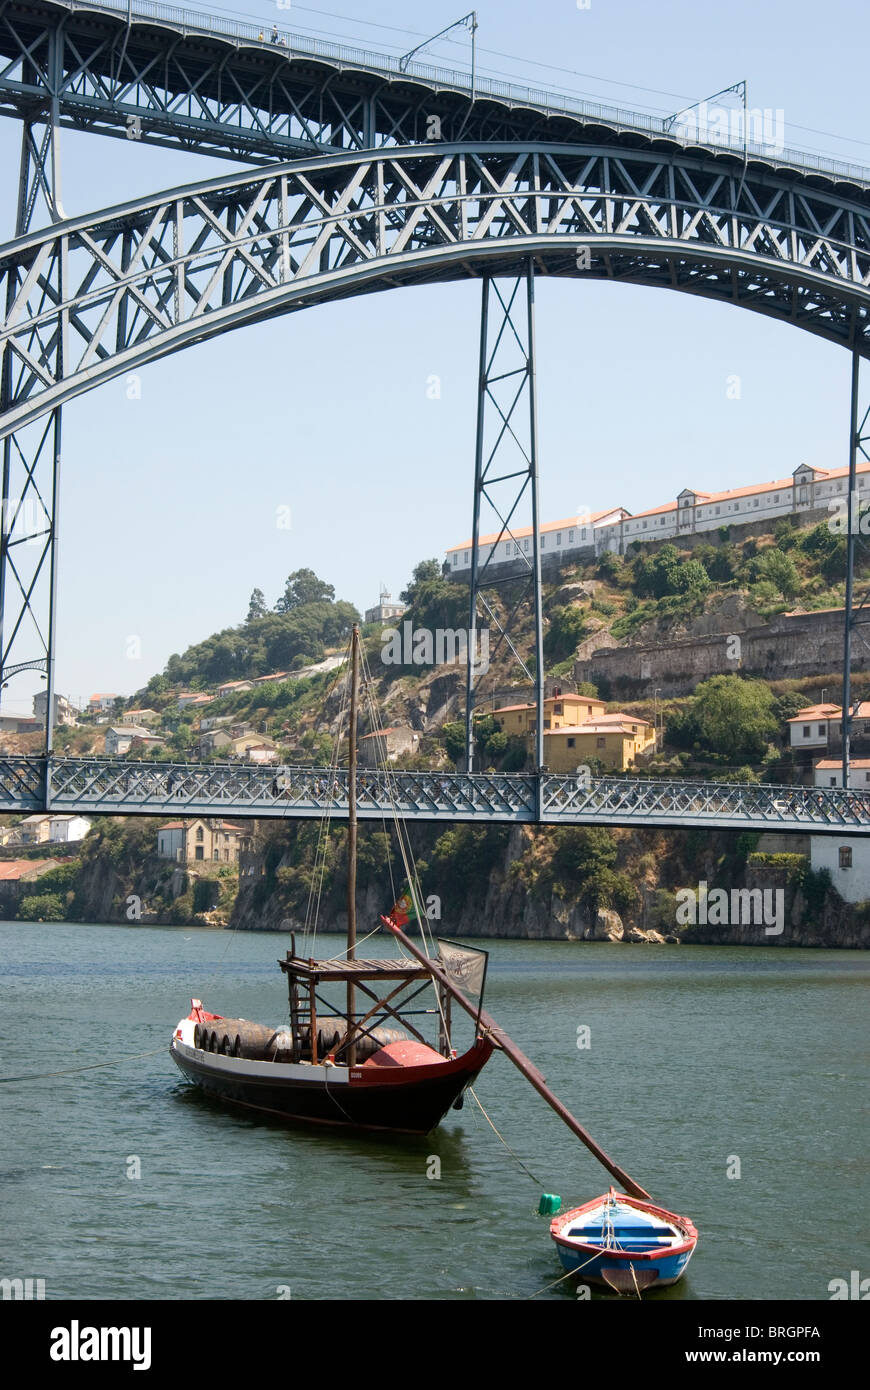 Barco Rabelo boat over Douro River in Porto, Portugal. Stock Photo